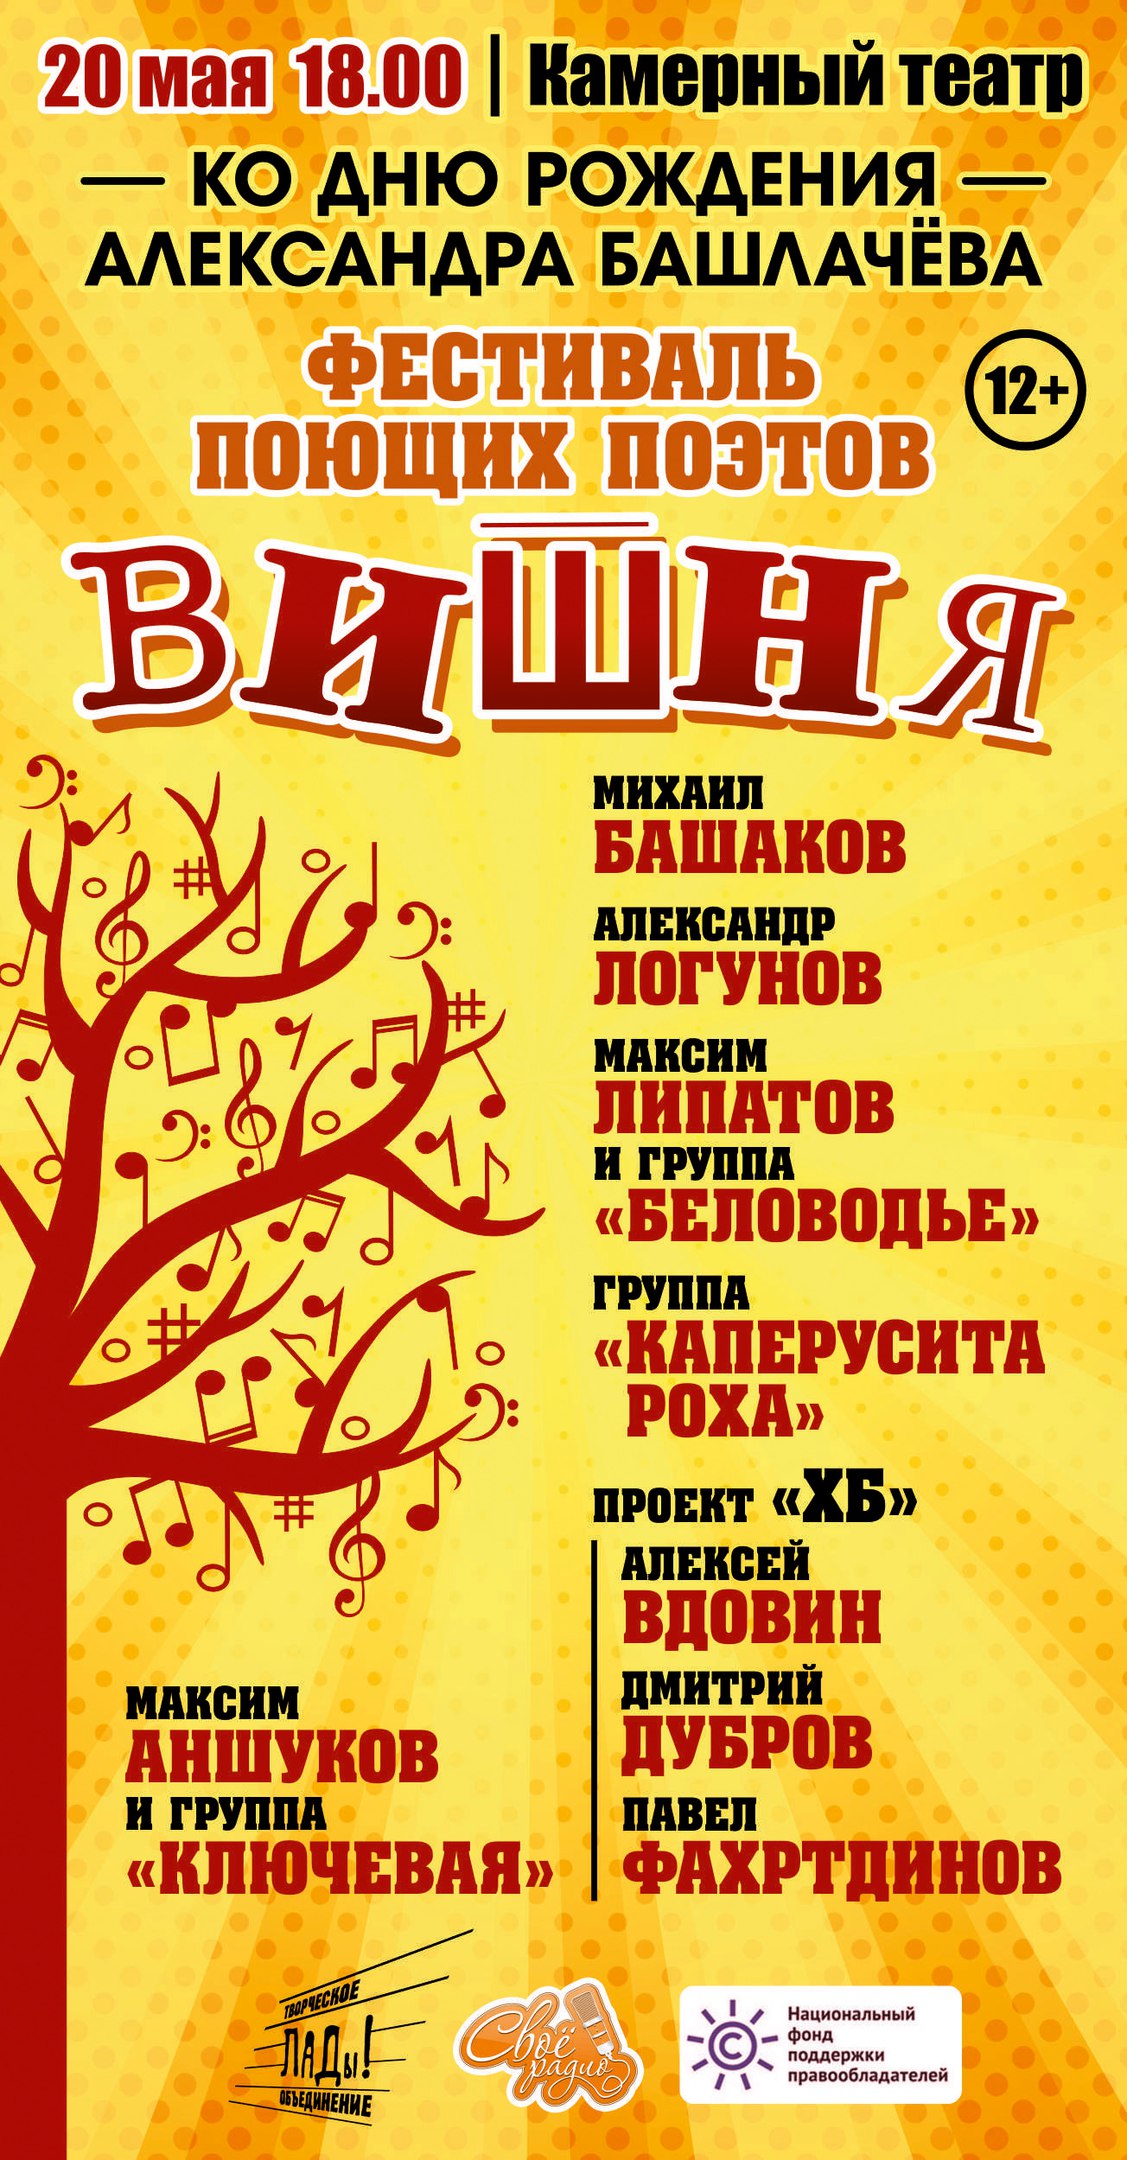 В Череповце при поддержке НФПП пройдет фестиваль поющих поэтов «Вишня»